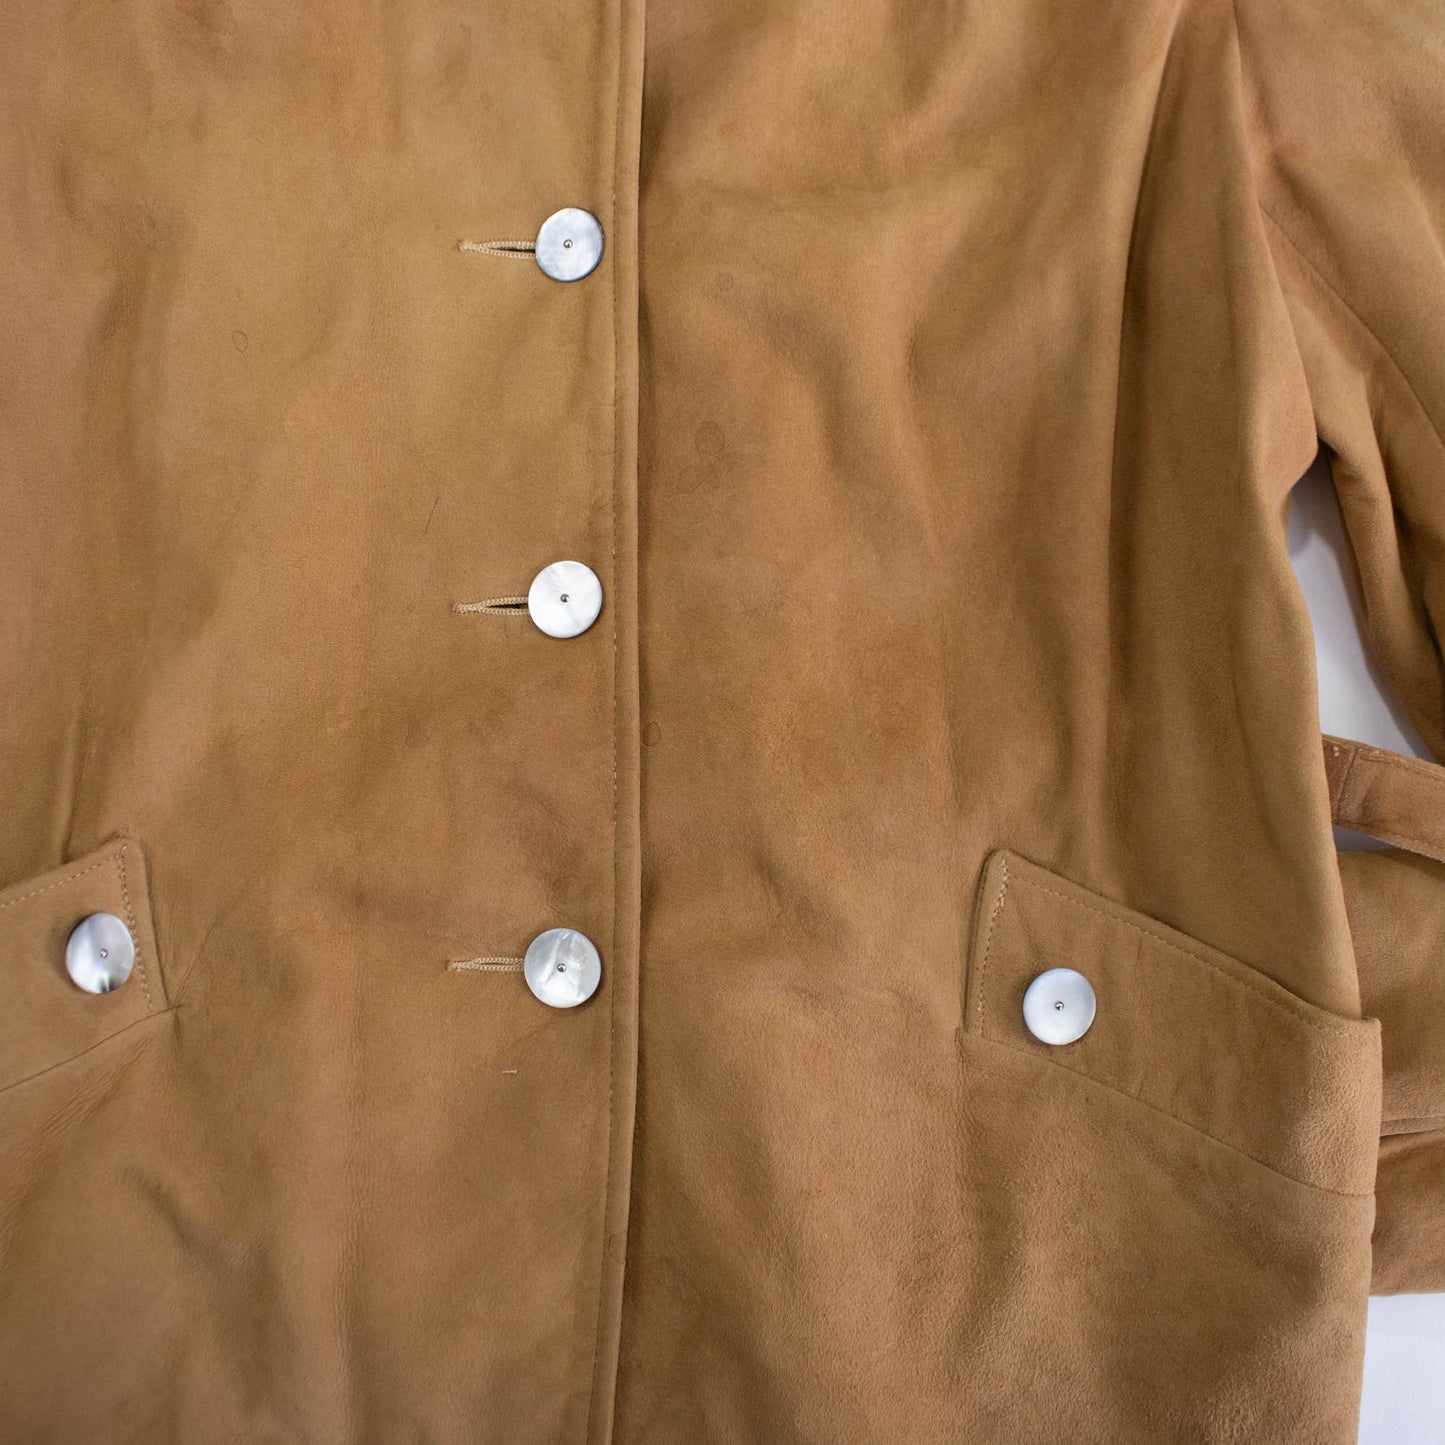 40s/50s Suede Jacket